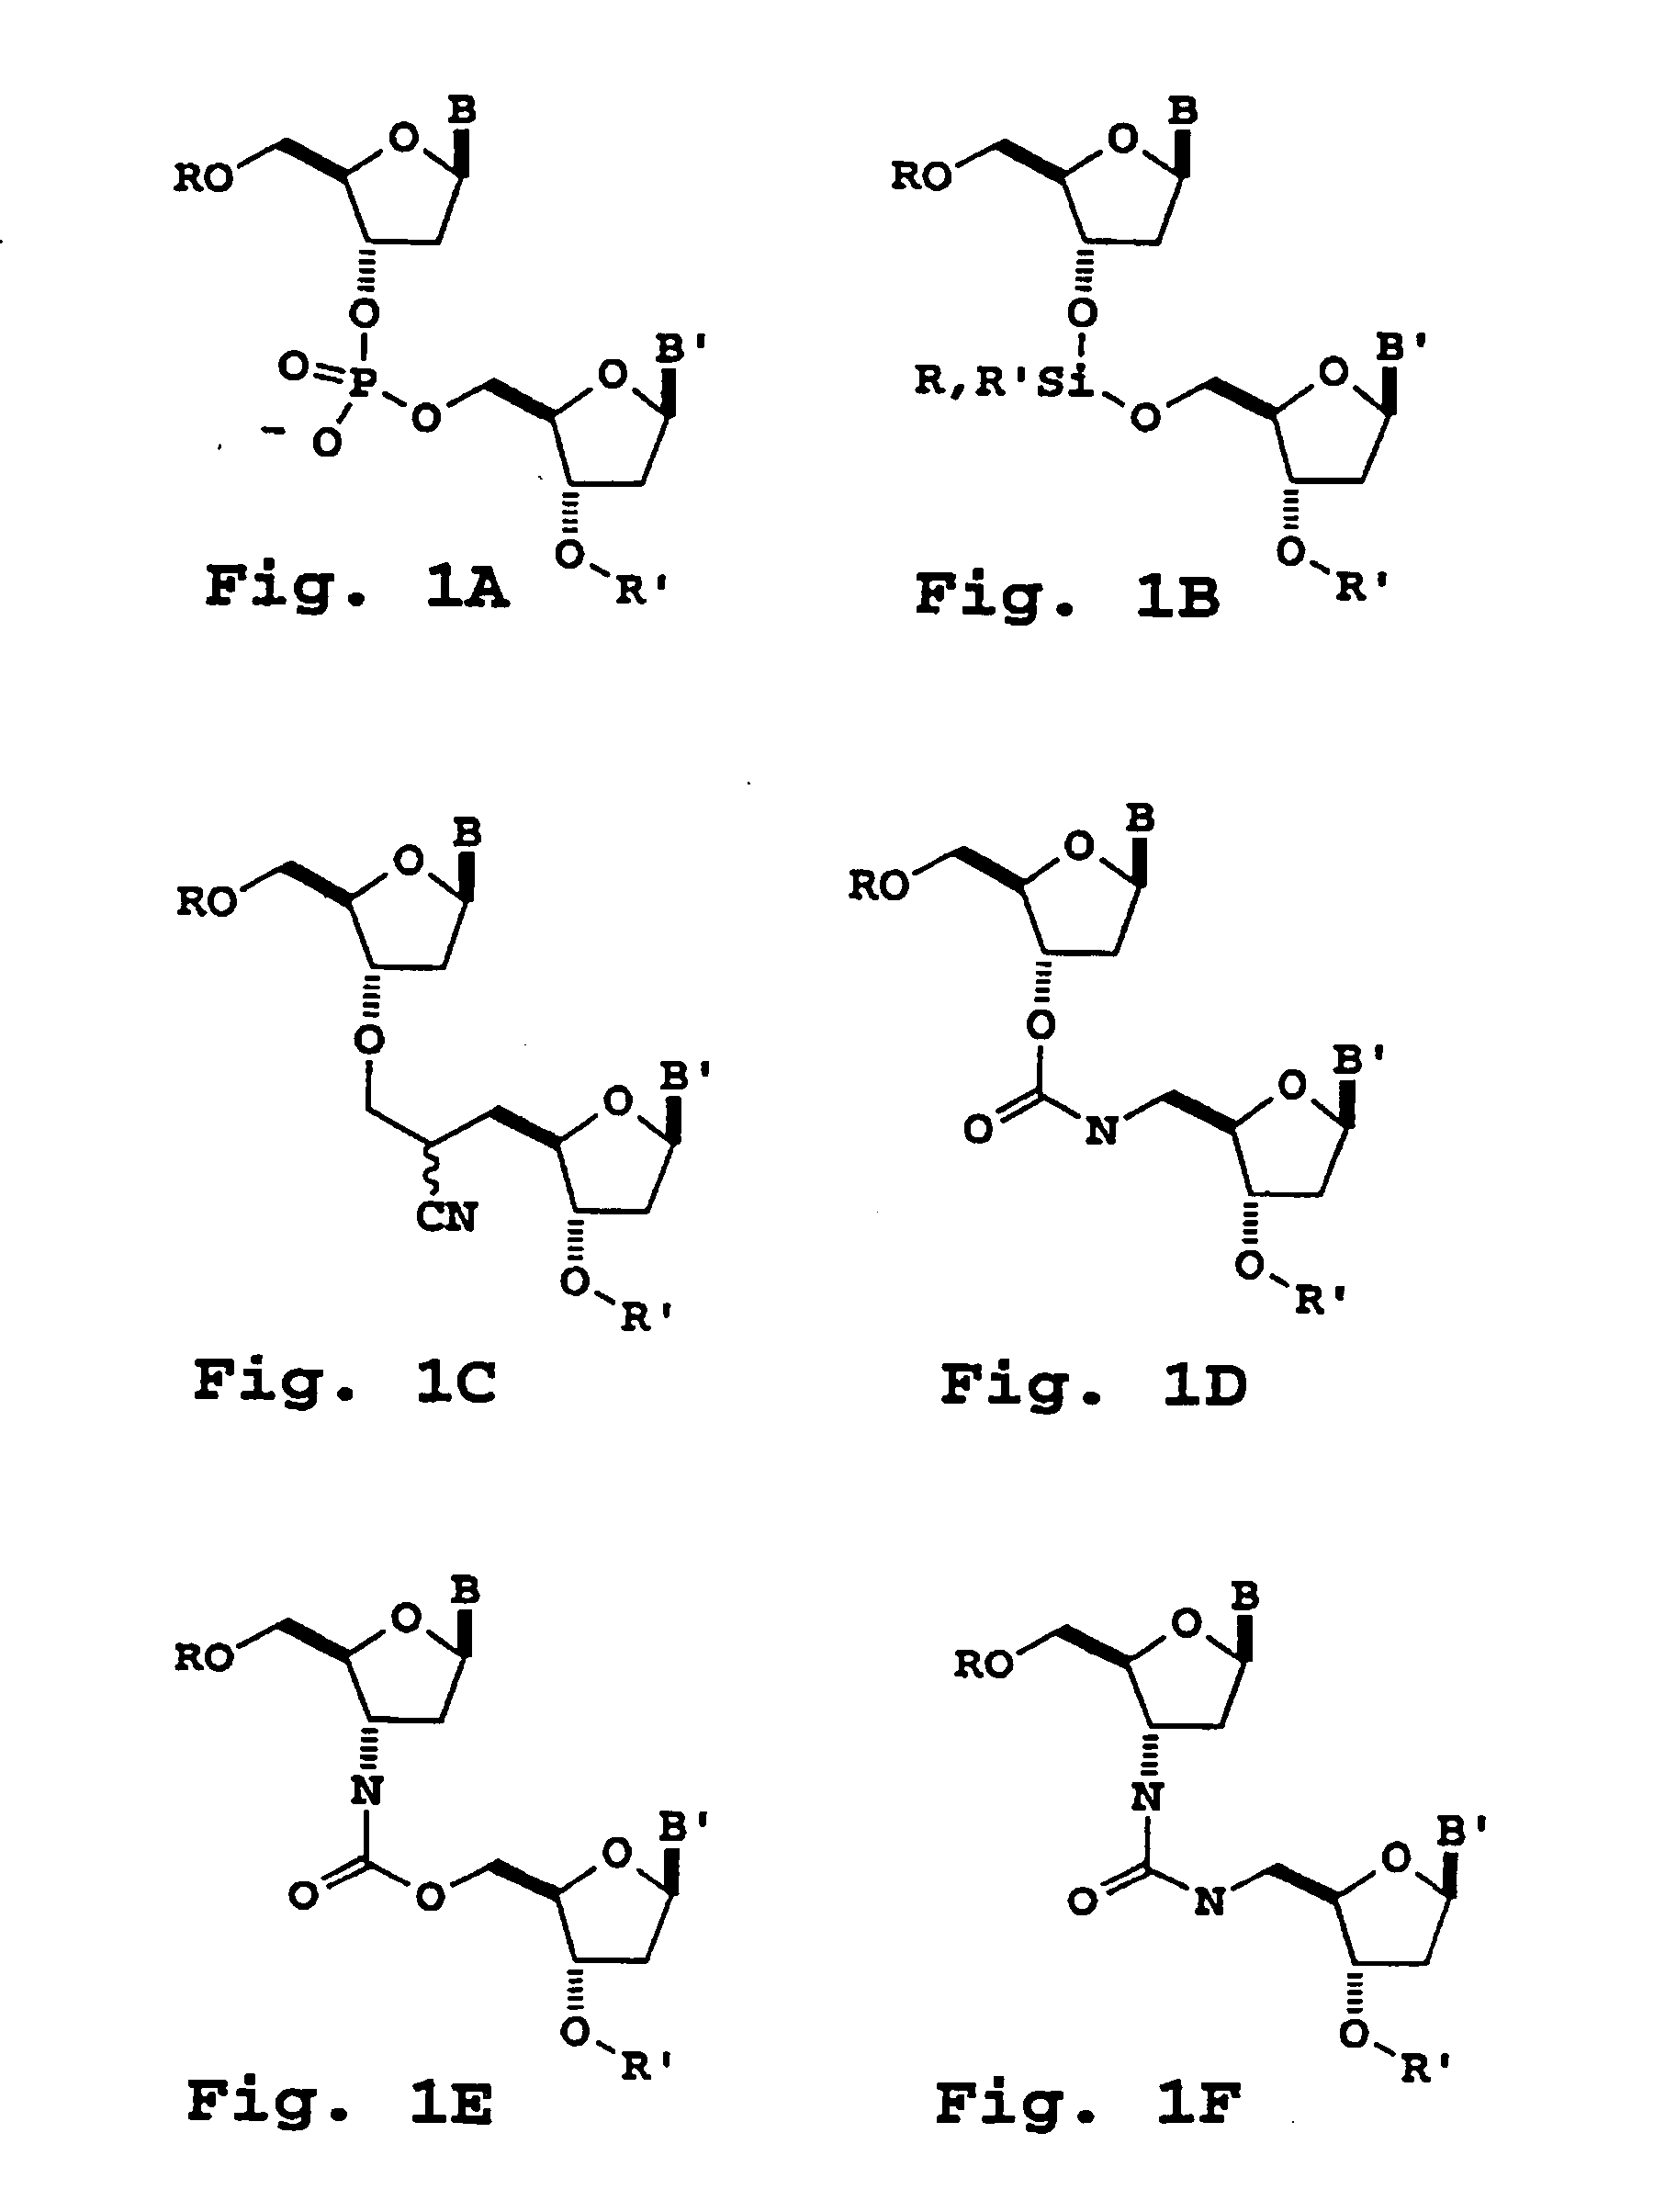 Oligonucleotide sizing using cleavable primers